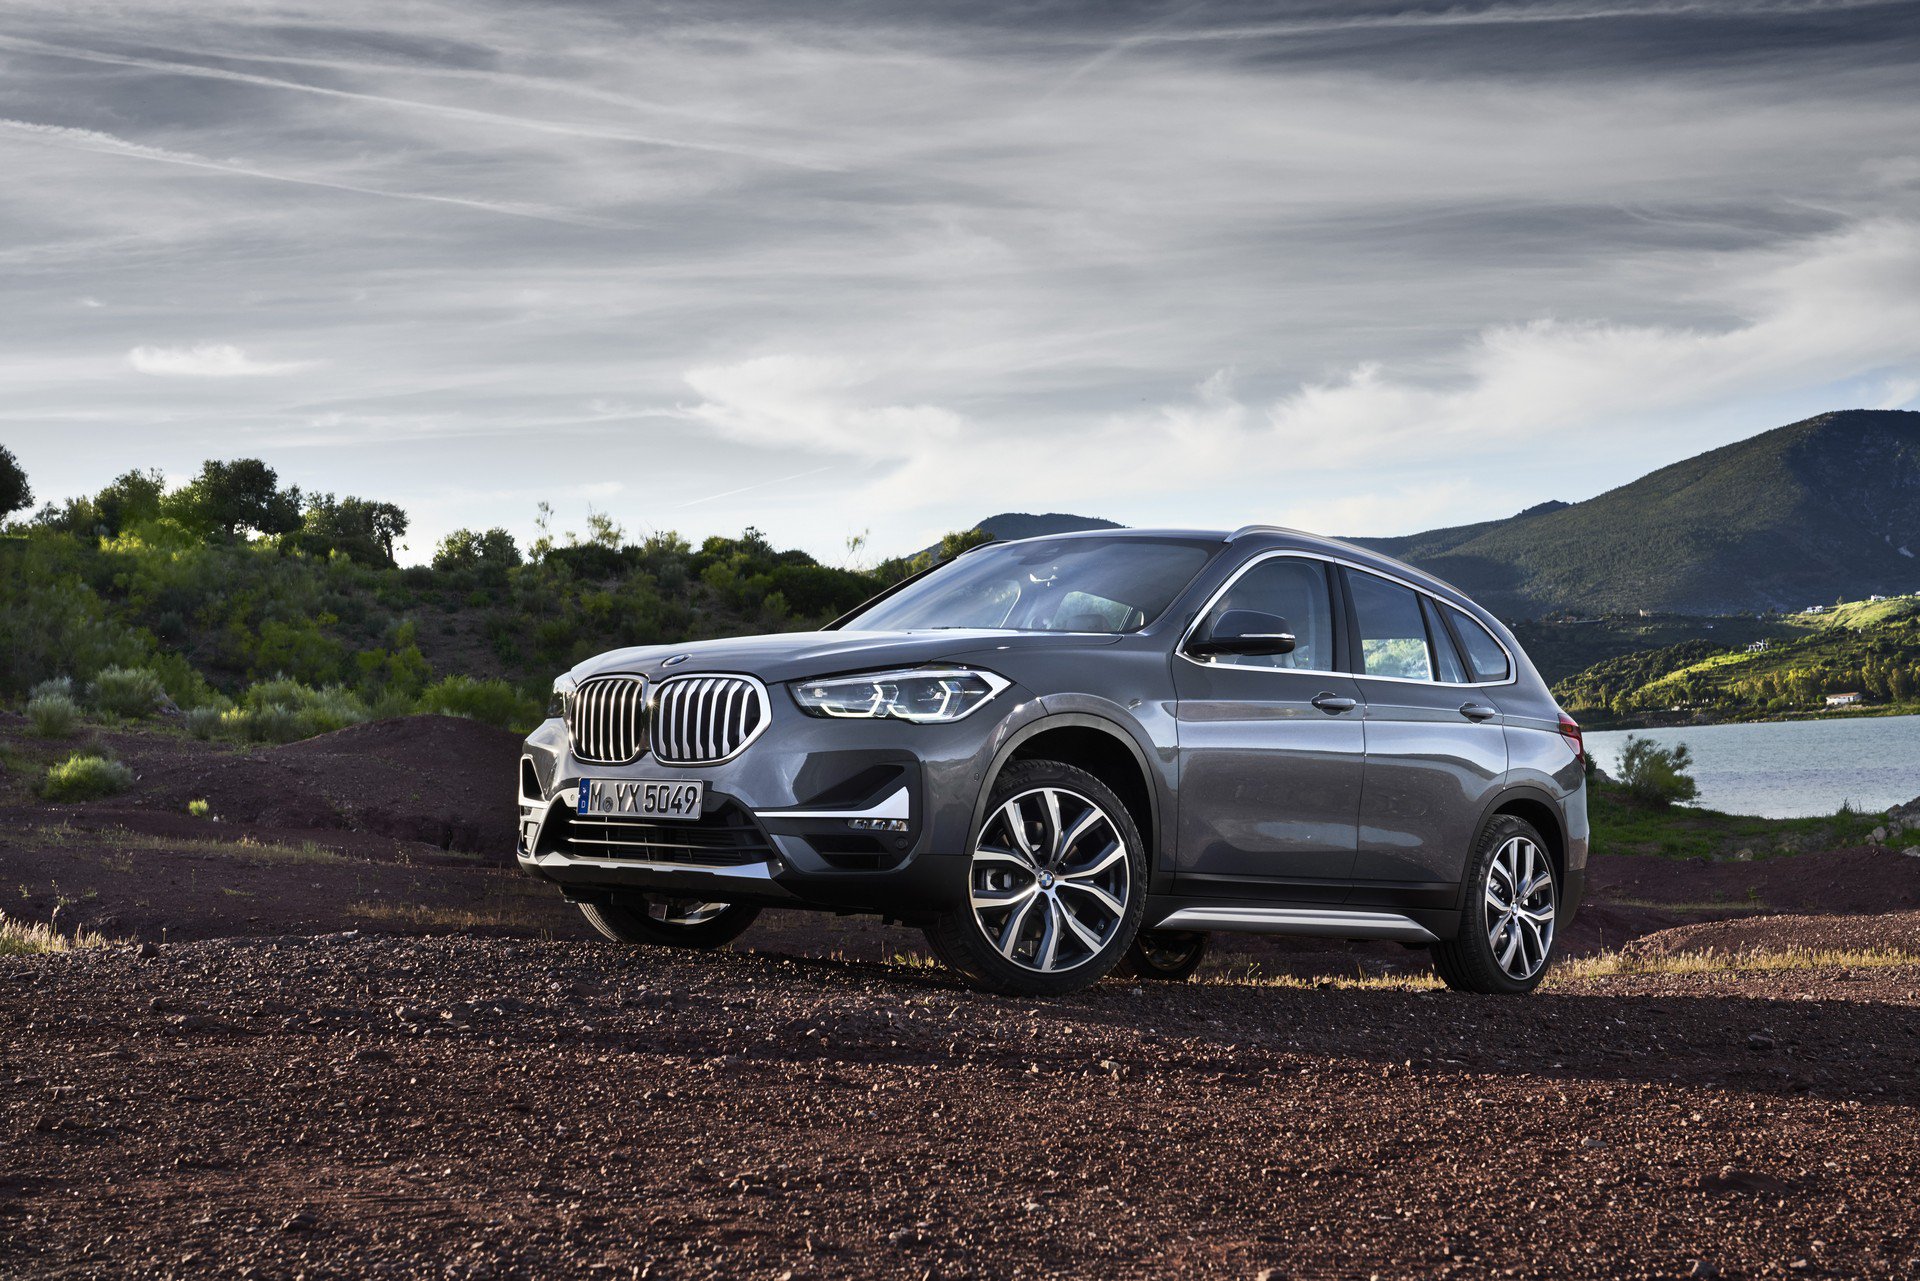 El BMW X1 2020 será híbrido enchufable y nueva apariencia